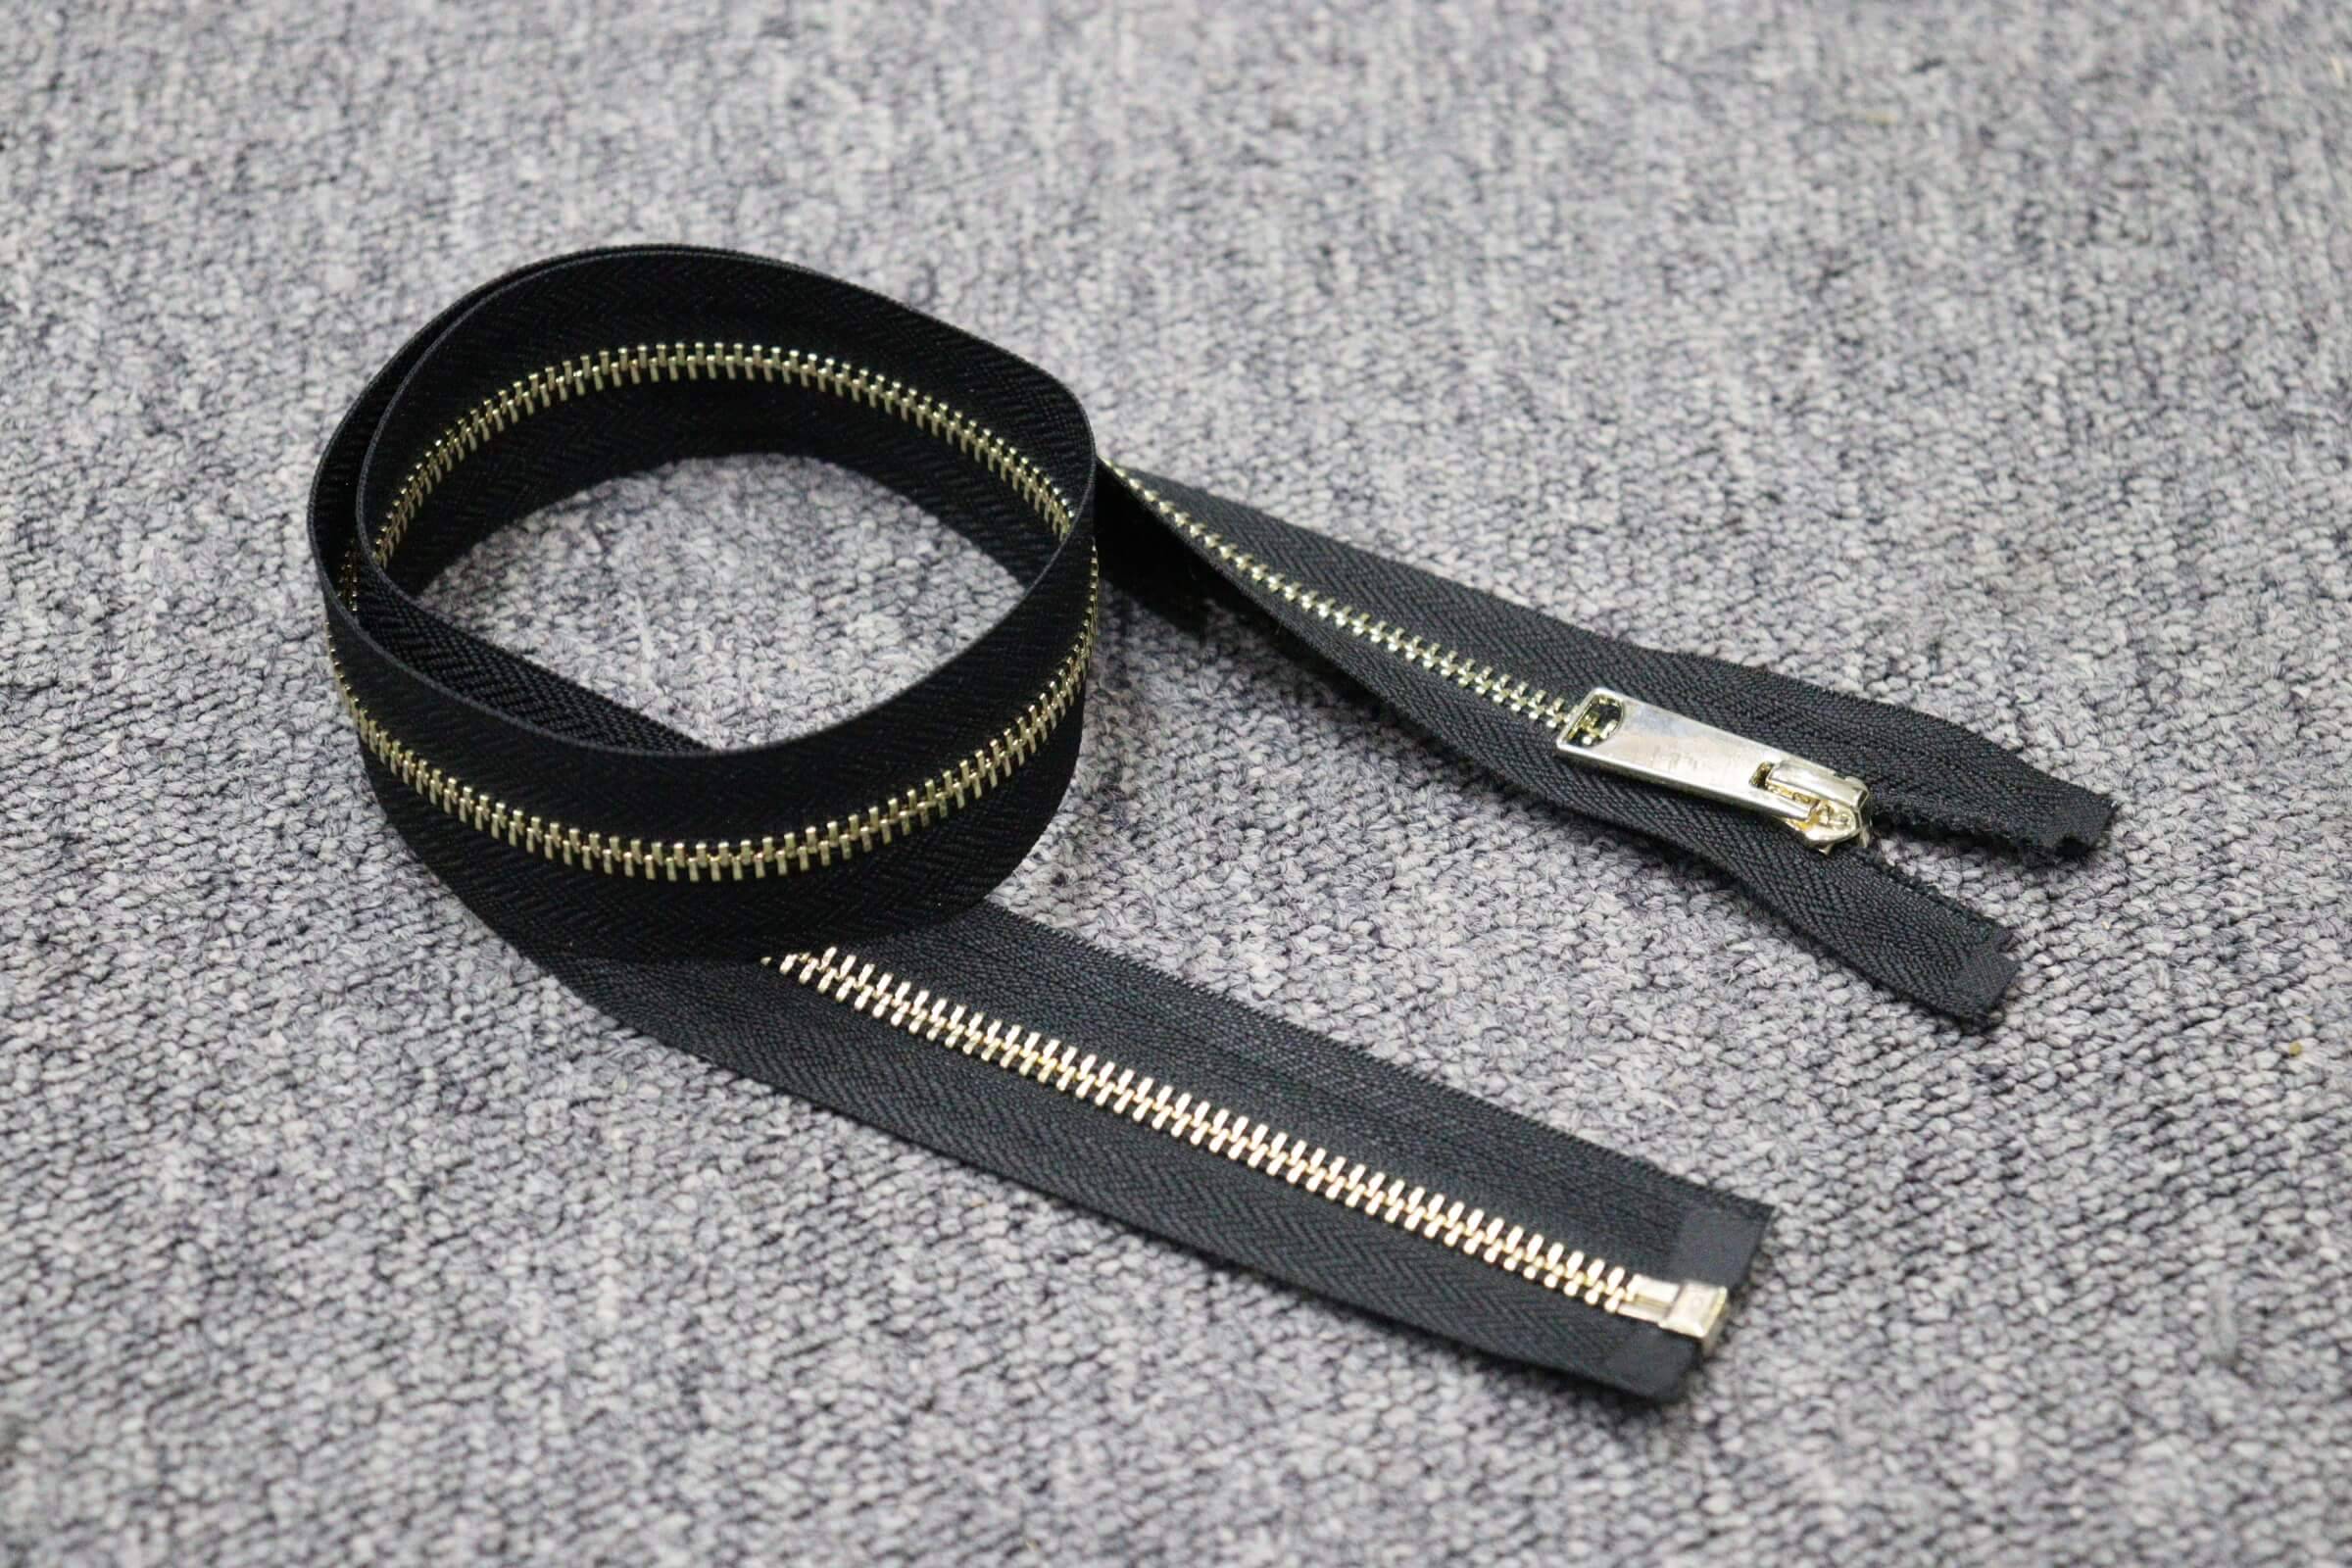 ZIPHOO #5 Metal Open-End Zipper